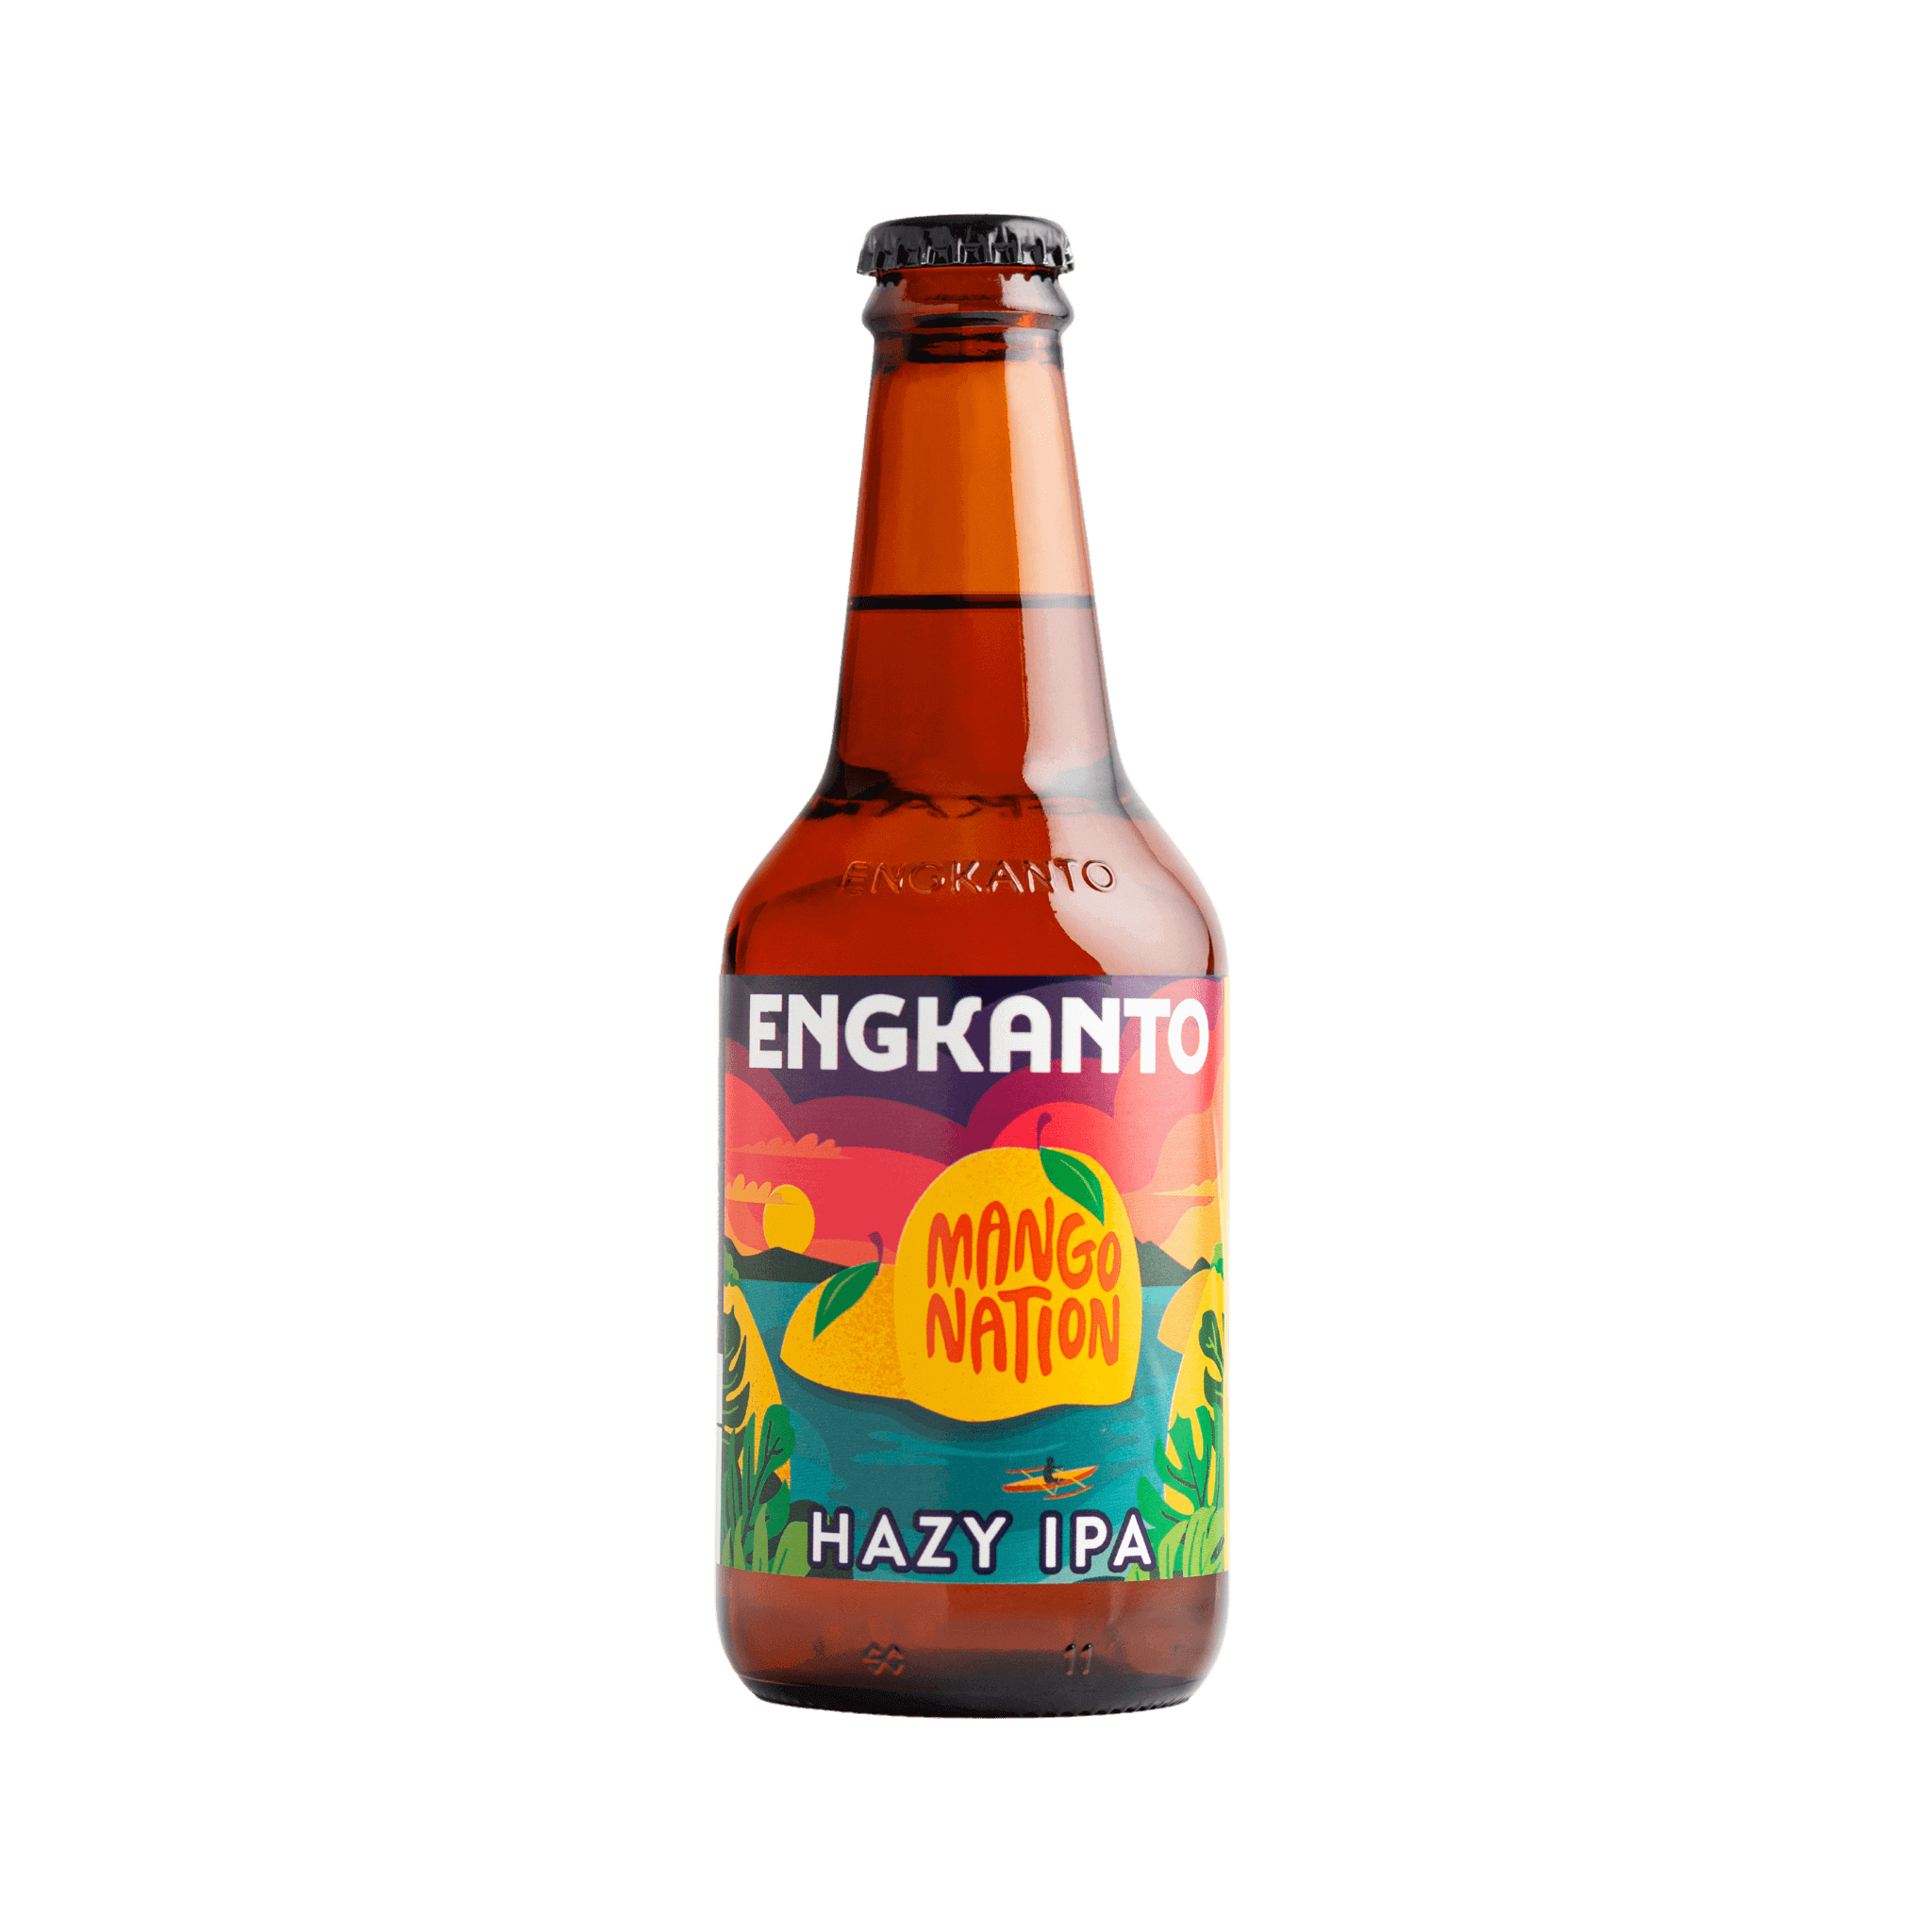 Engkanto Mango Nation – Hazy IPA 330mL Bottle at ₱135.00